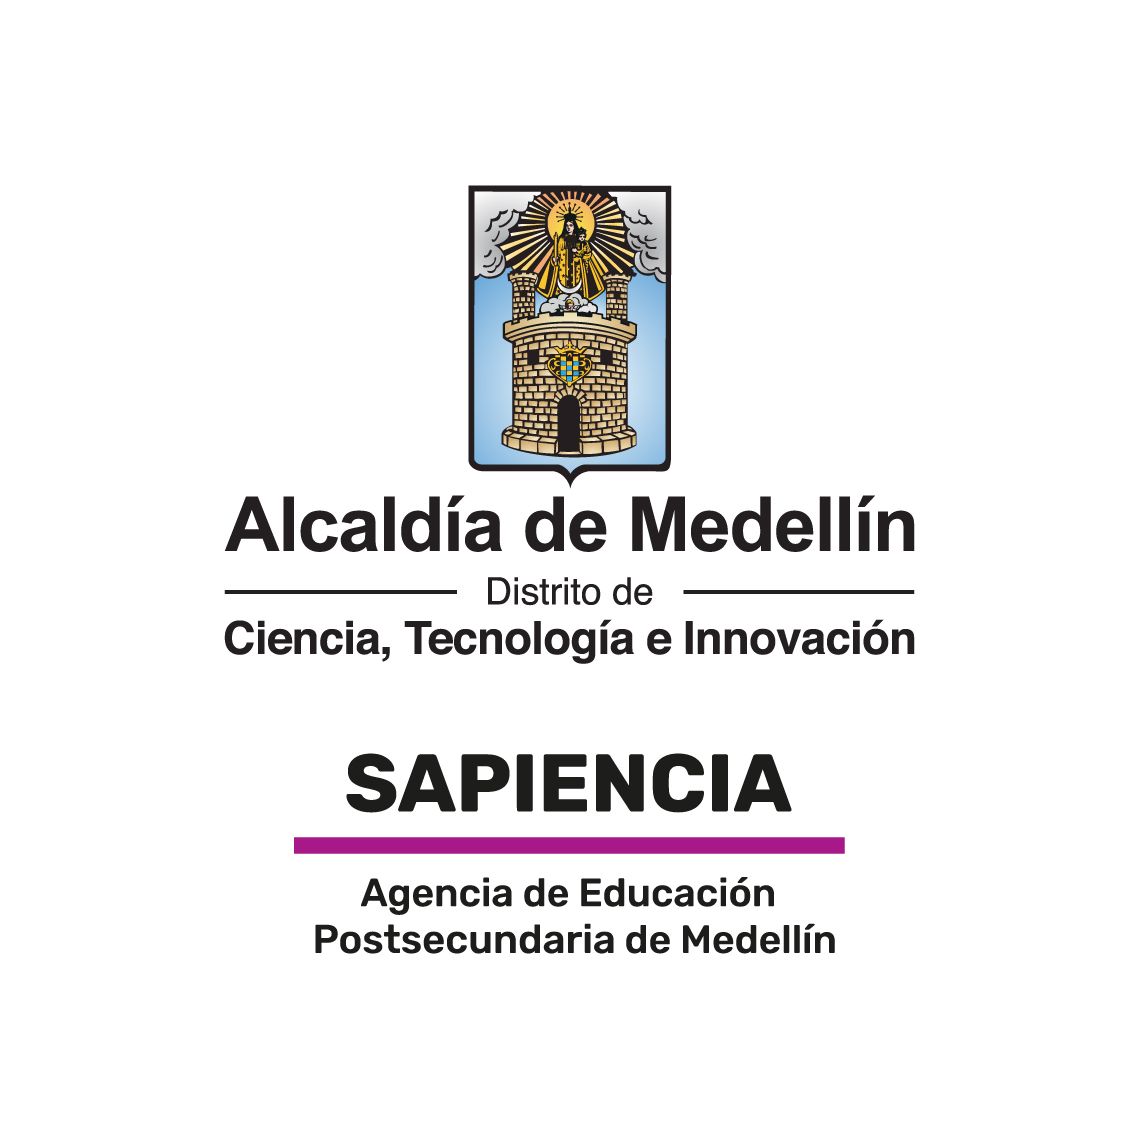 (c) Sapiencia.gov.co